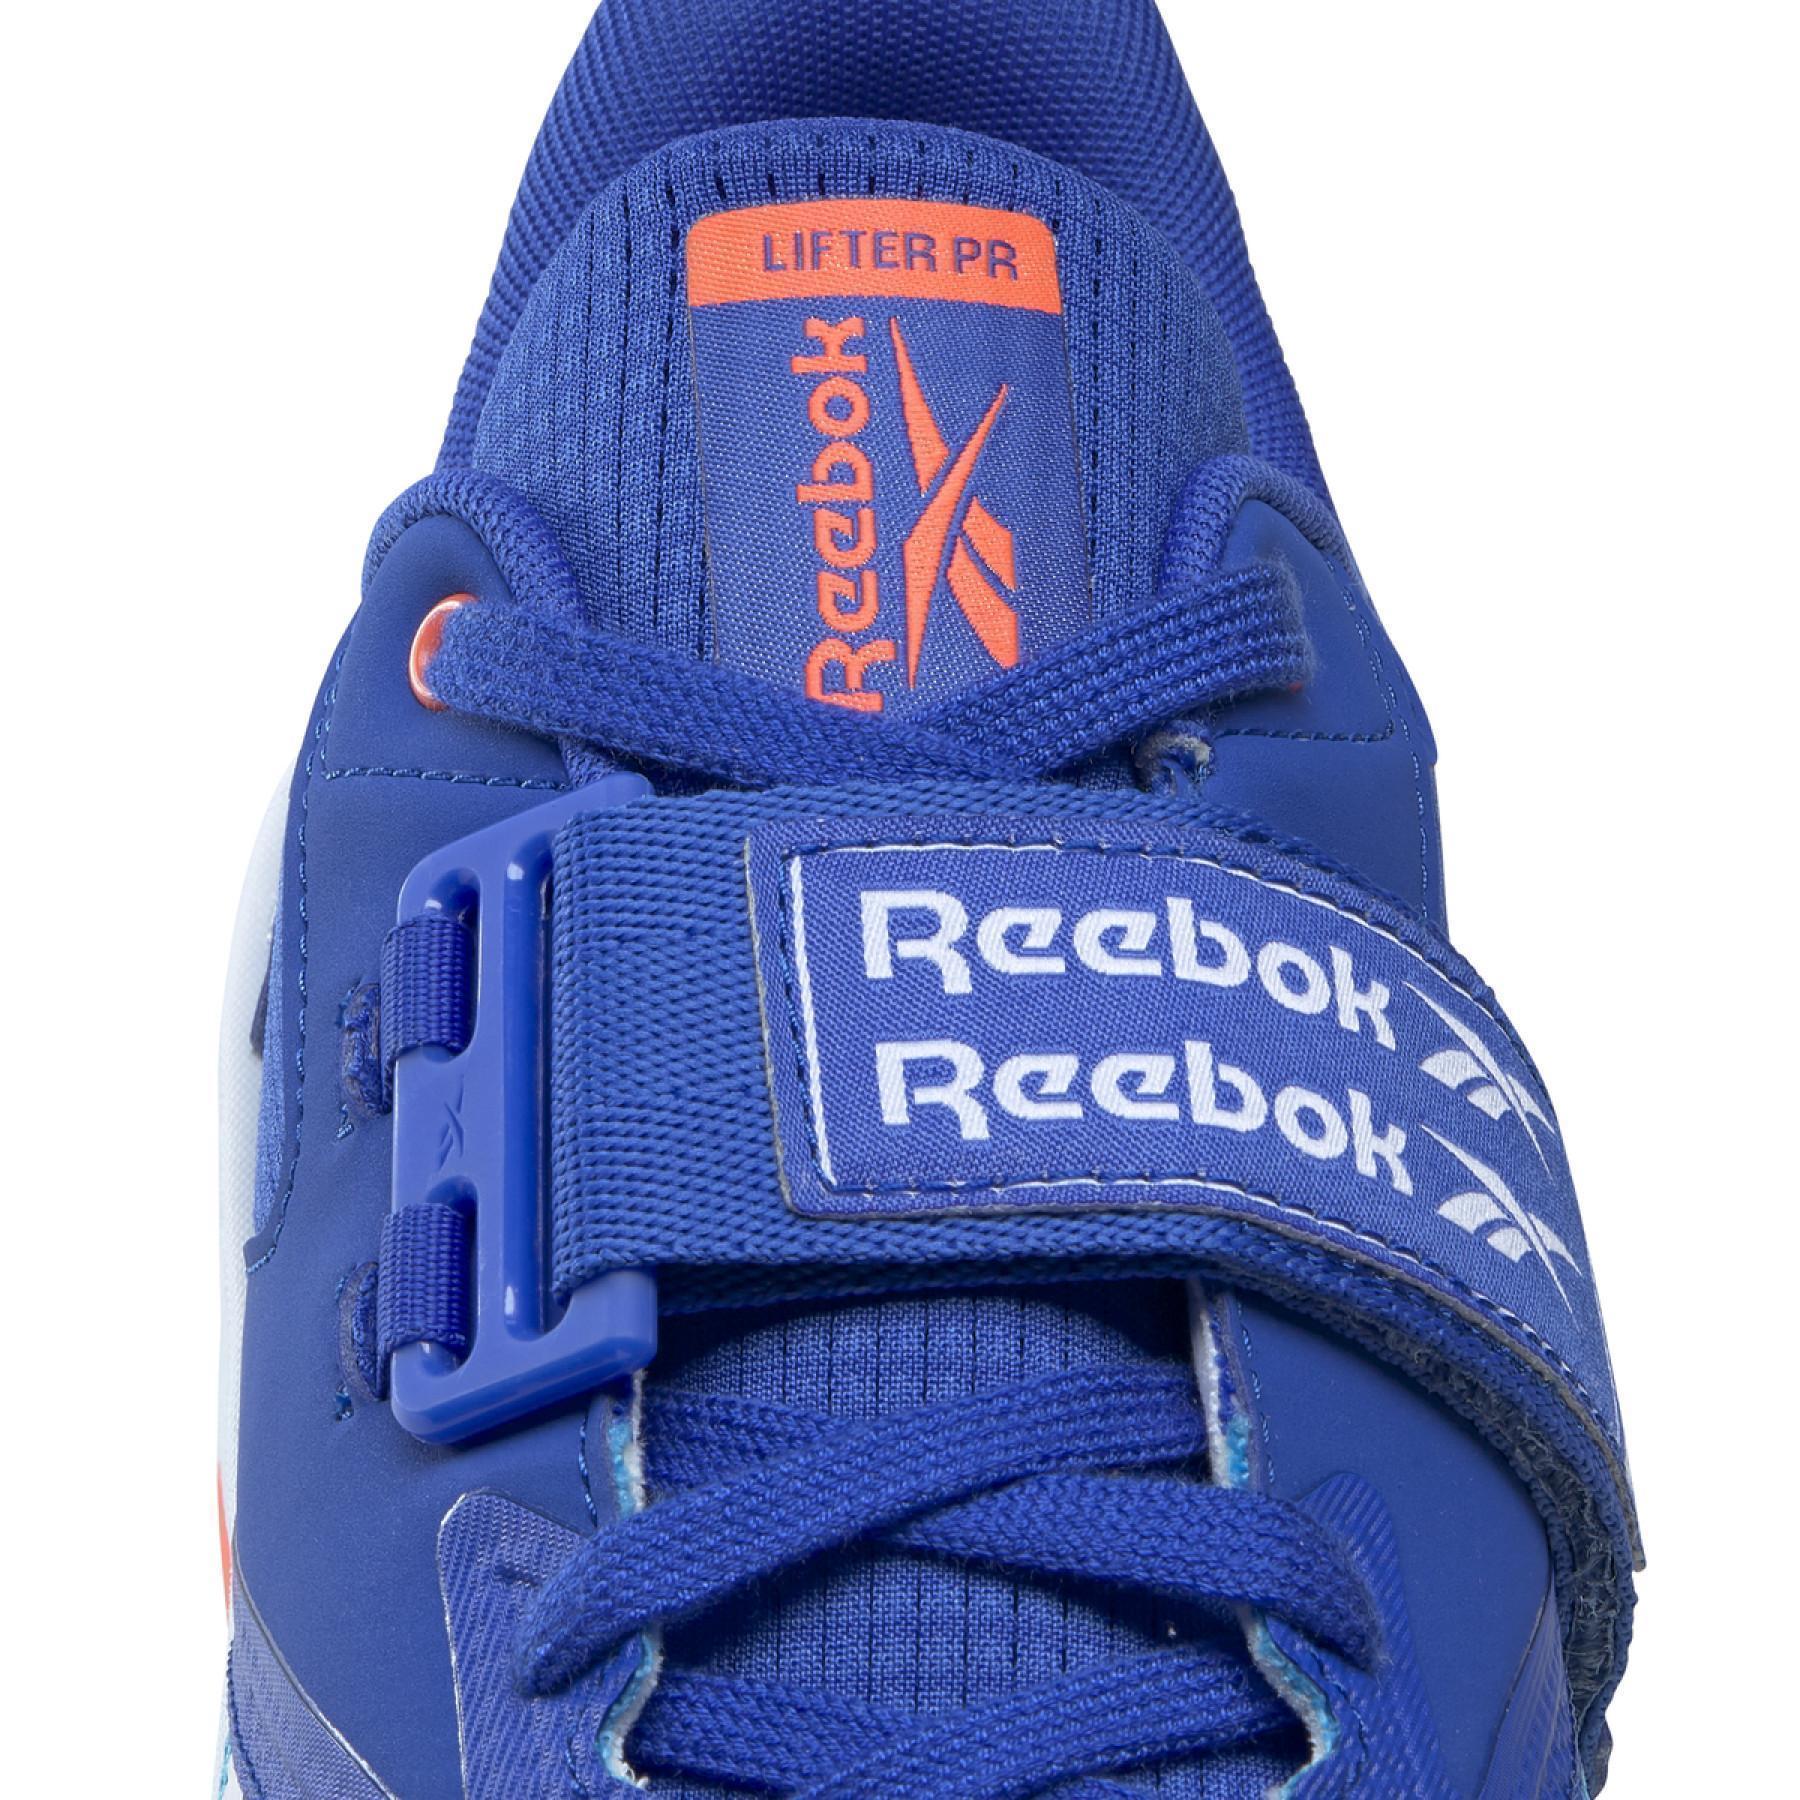 Schoenen Reebok Lifter PR II